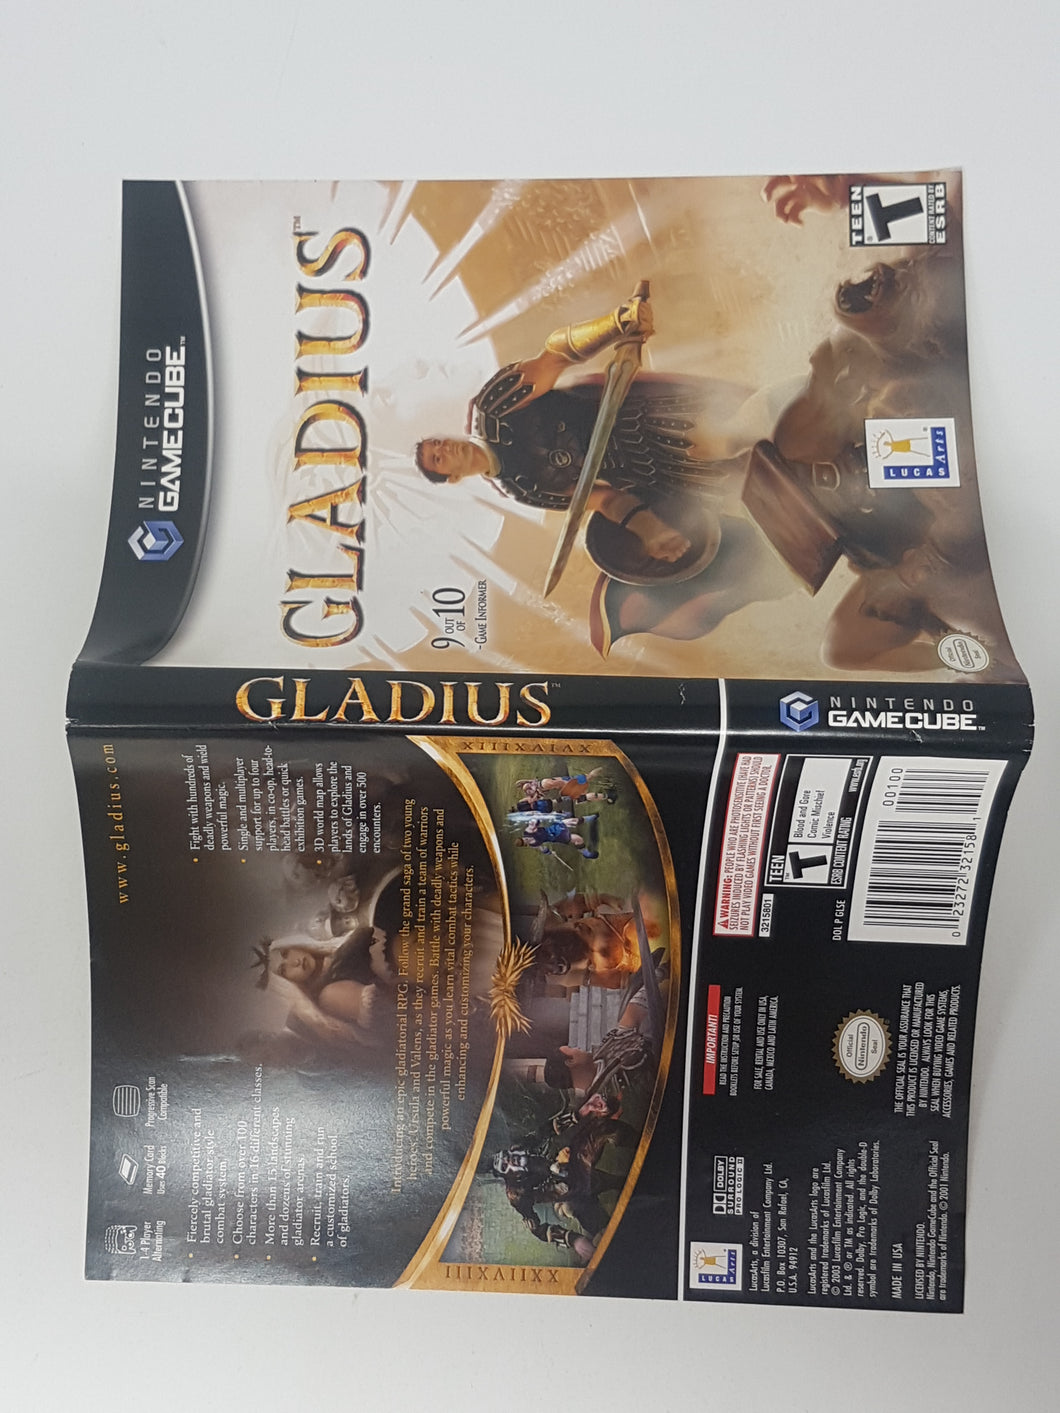 Gladius [Cover Art] - Nintendo Gamecube